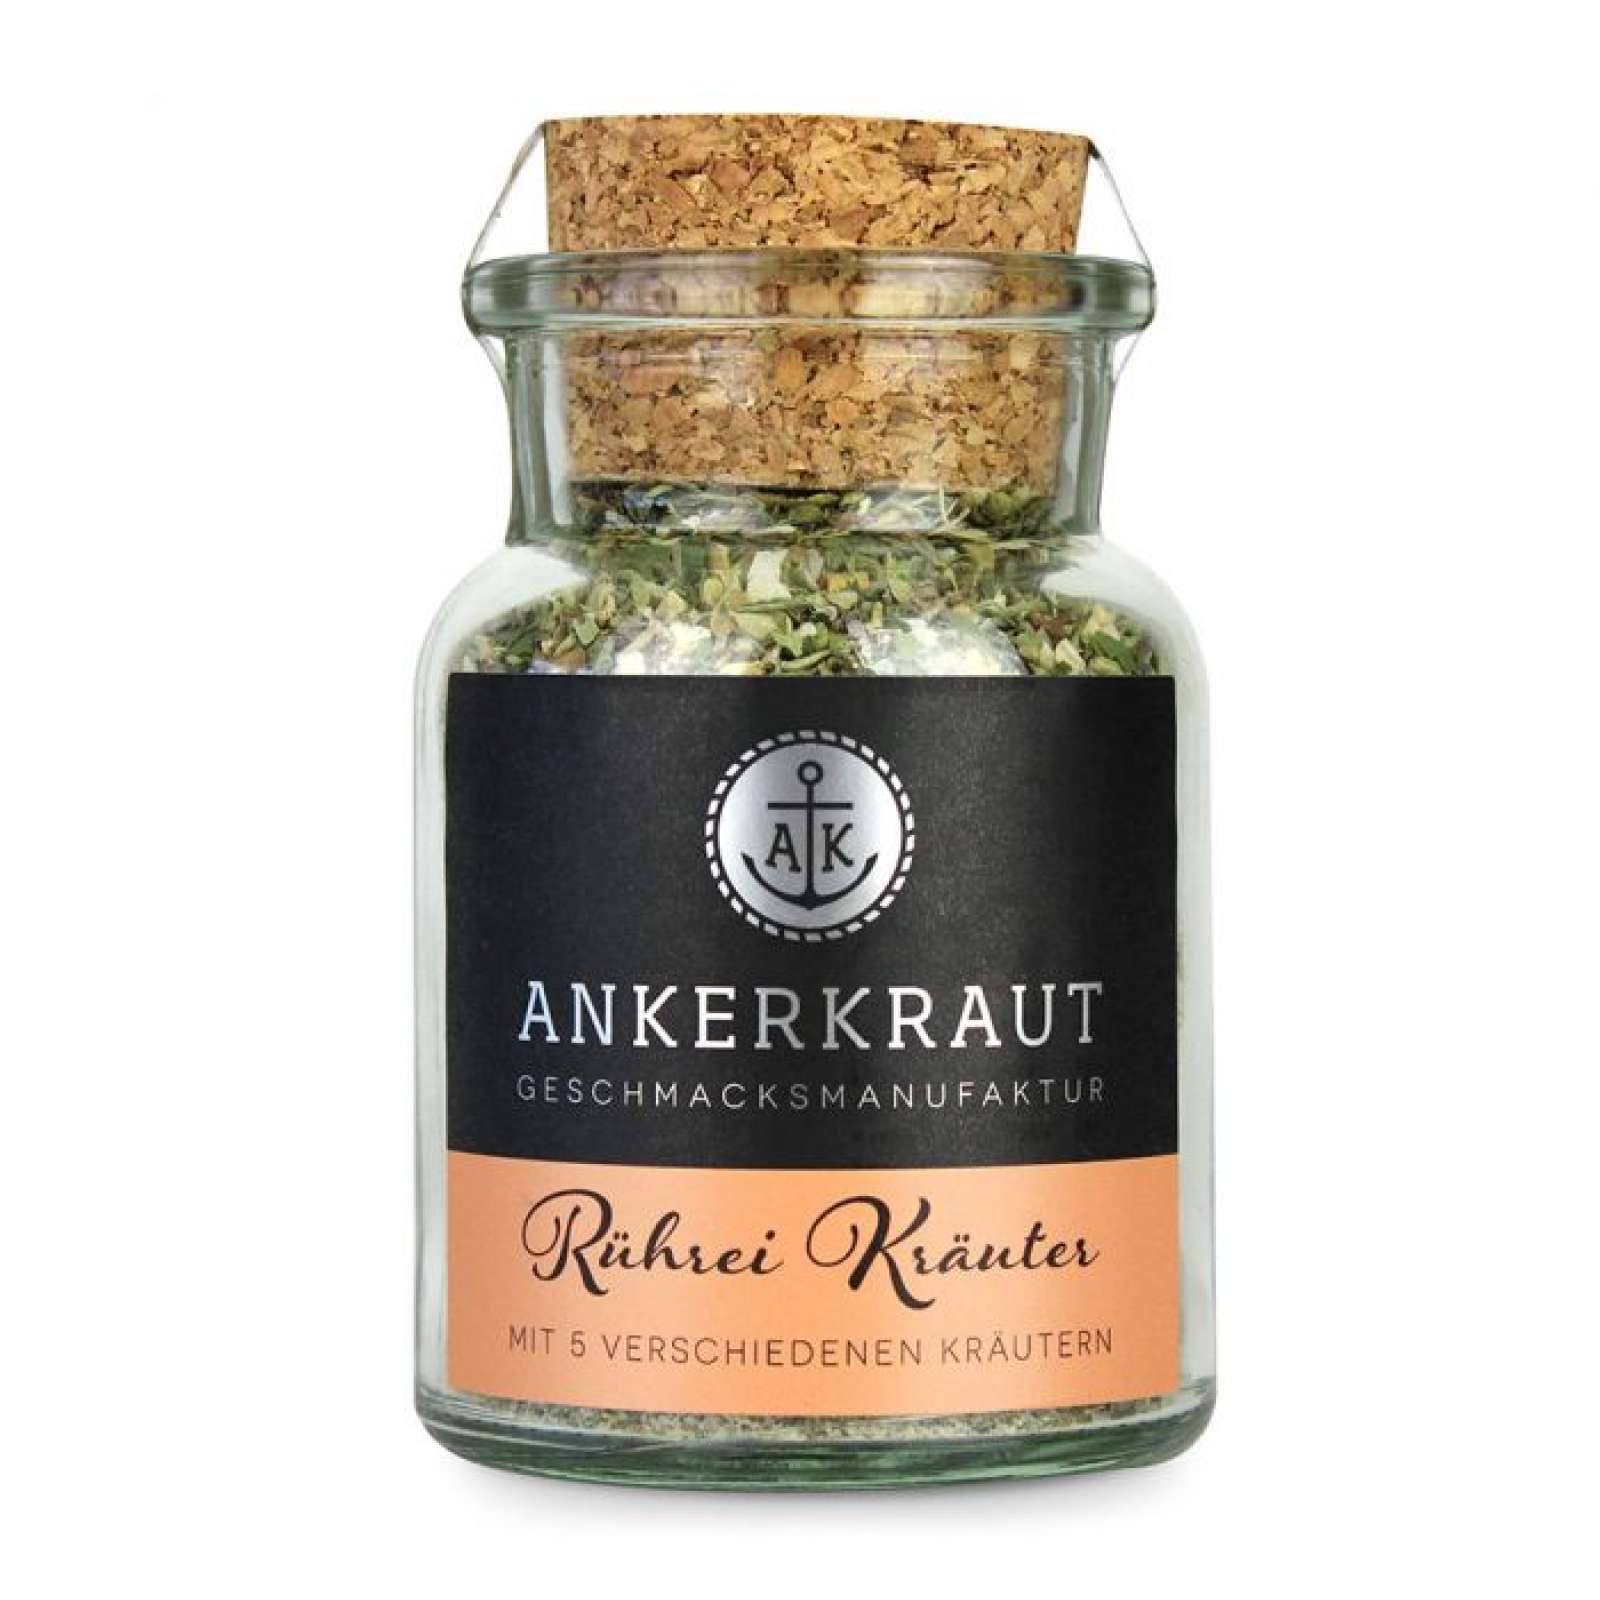 Ankerkraut Rührei Kräuter Gewürzzubereitung für aromatische Rühreier im Korkenglas 55 g